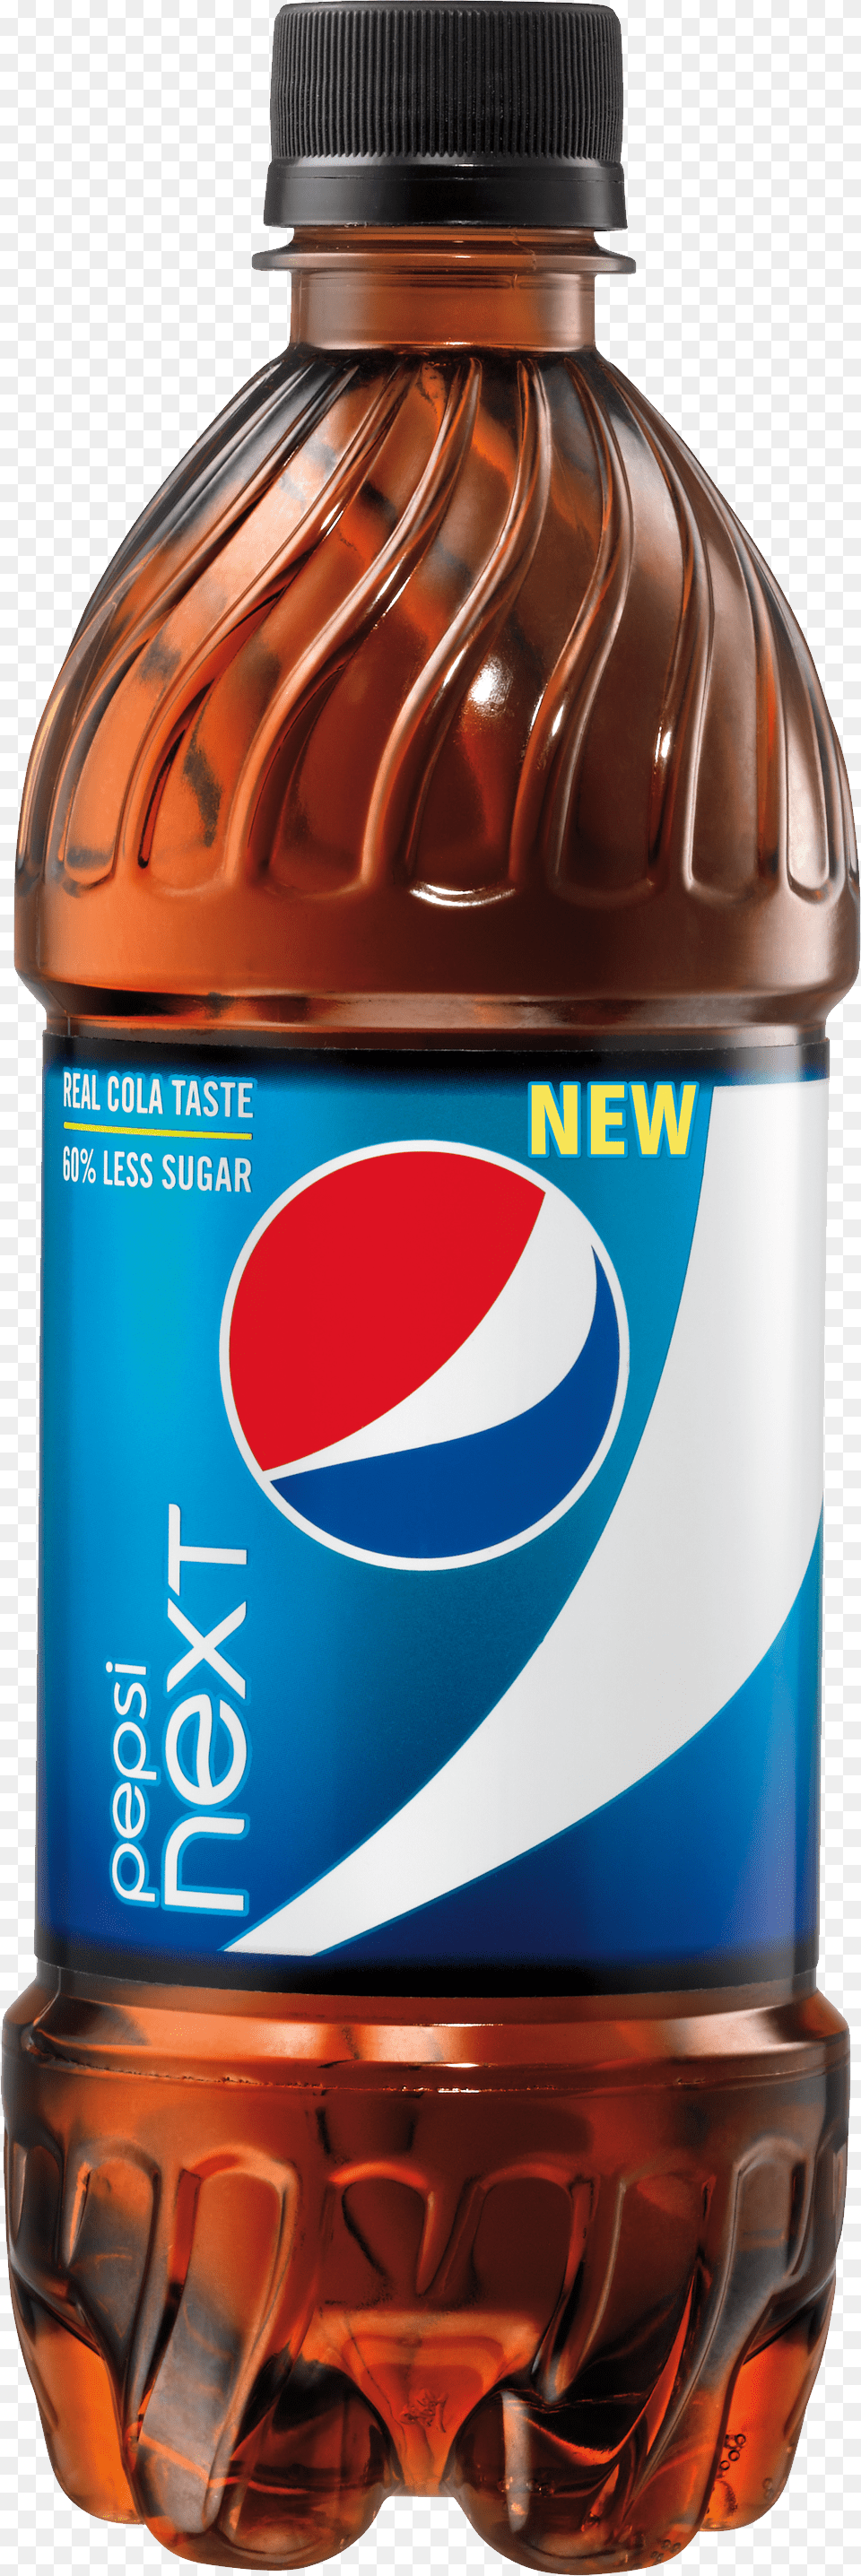 Pepsi, Bottle, Shaker, Beverage, Soda Free Transparent Png